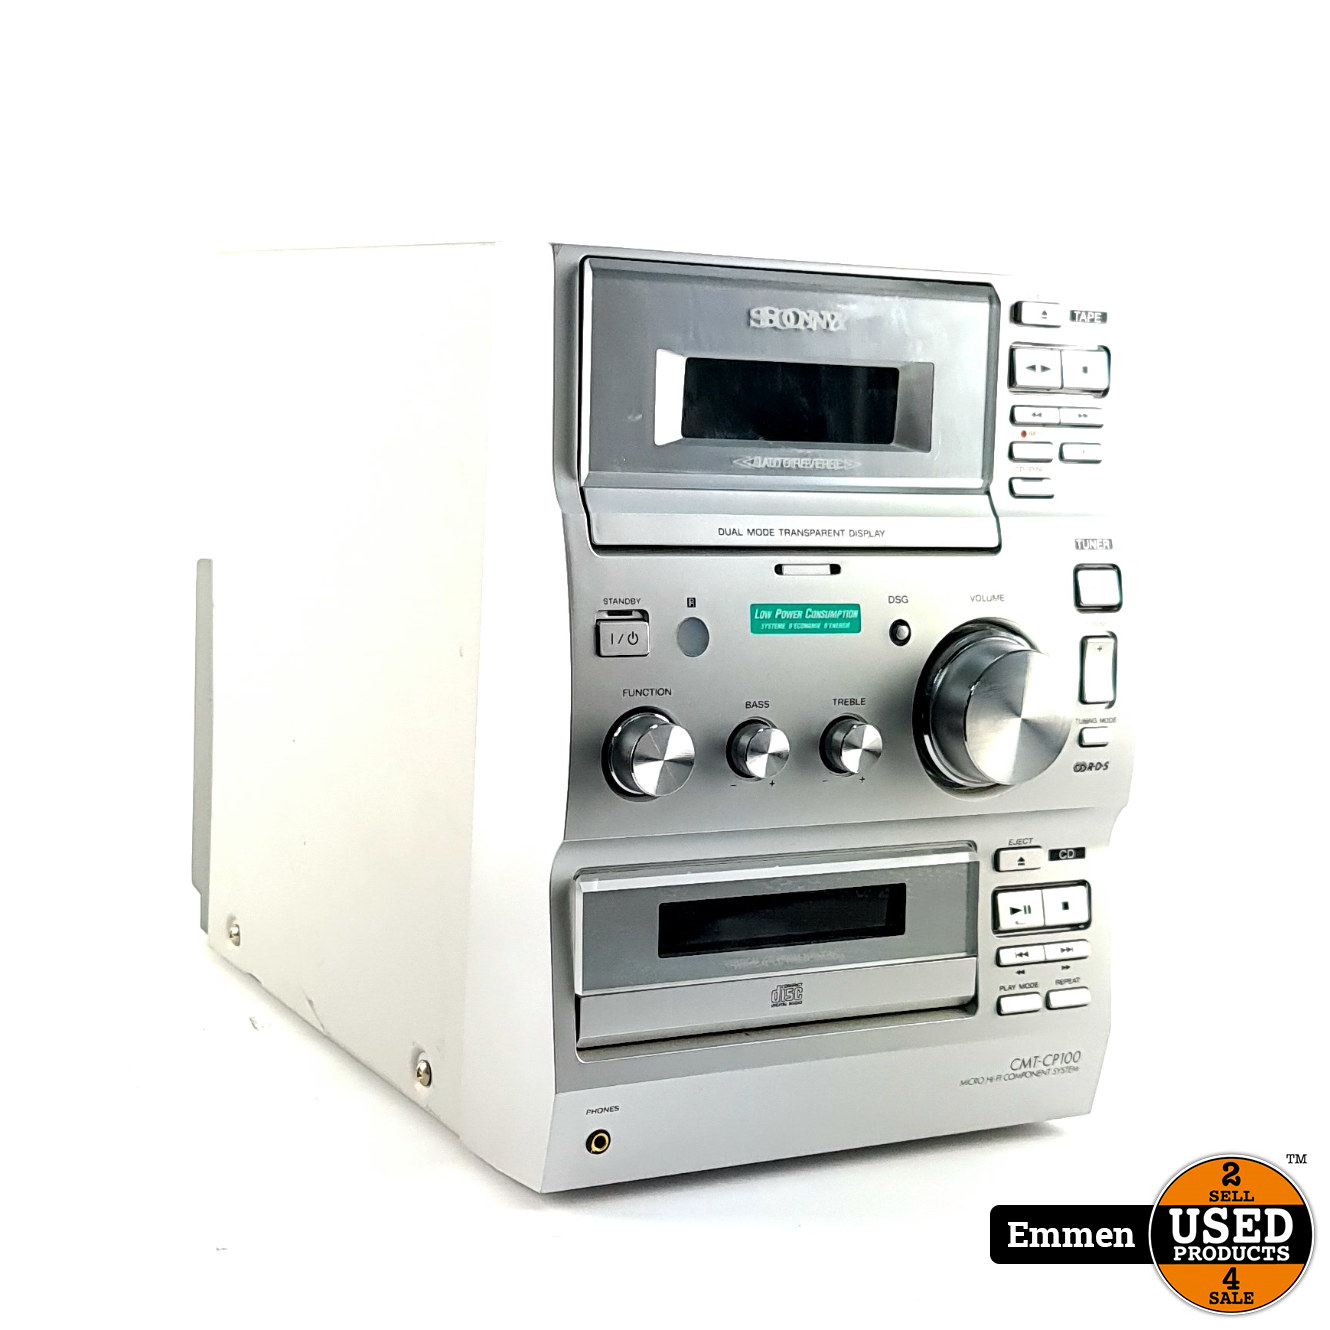 Onafhankelijkheid bijstand Kosciuszko Sony Cmt-cp100 CD Speler, Tuner &amp; Cassette Zilver | In Nette Staat -  Used Products Emmen